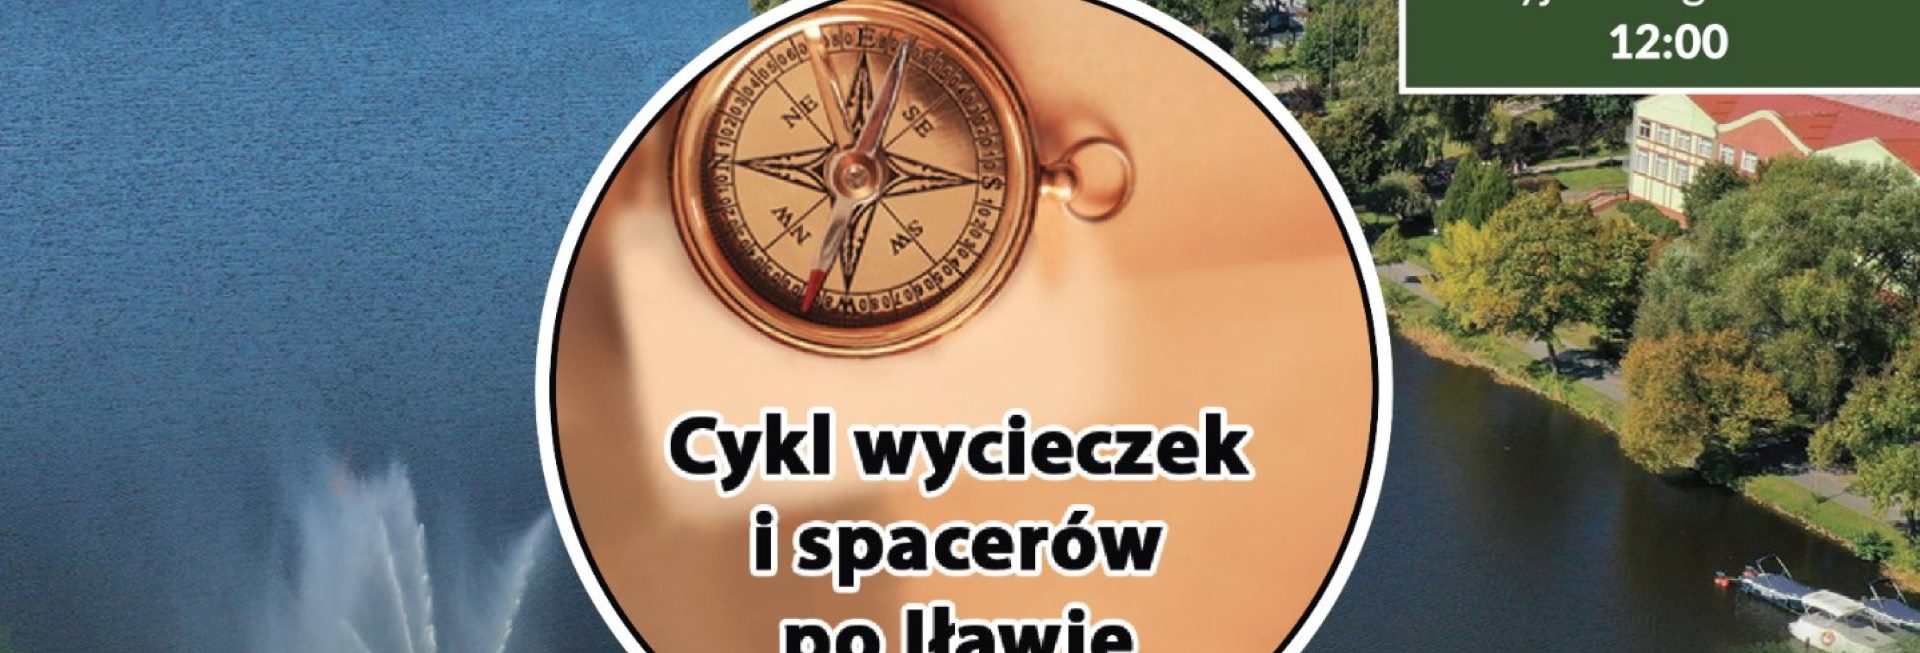 Plakat graficzny zapraszający do Iławy na wycieczkę - zwiedzanie z przewodnikiem "Spacery po Iławie" 2022 TRASA 1.